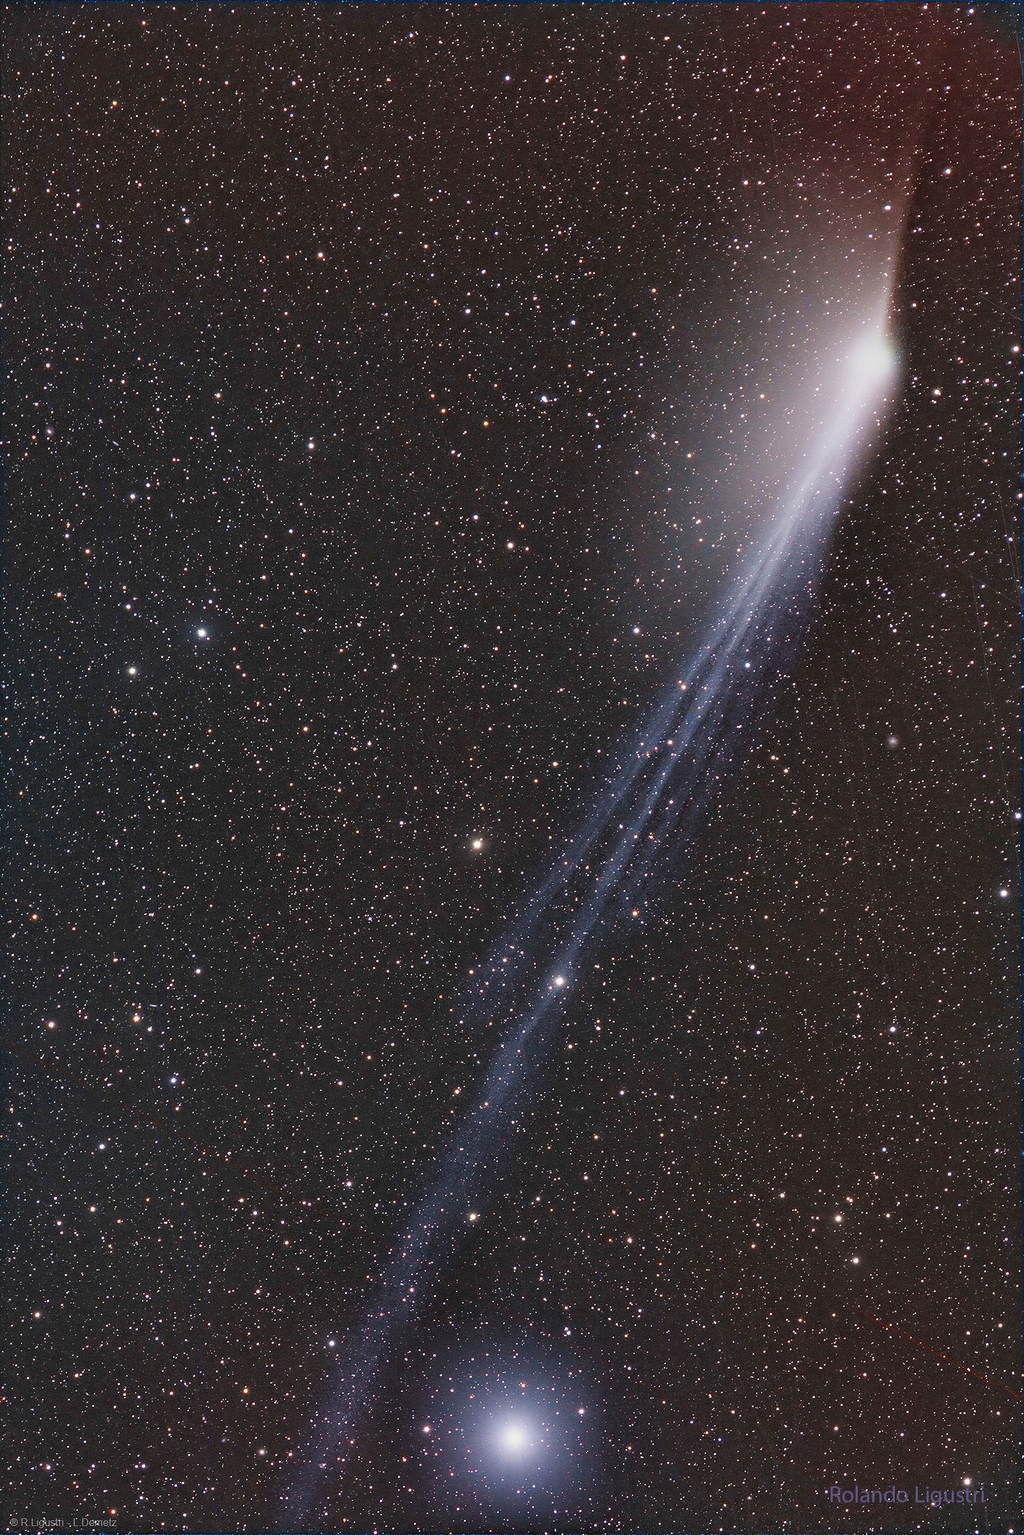 Cometa 12P e sua cauda dupla (Imagem: Reprodução/Rolando Ligustri & Lukas Demetz)